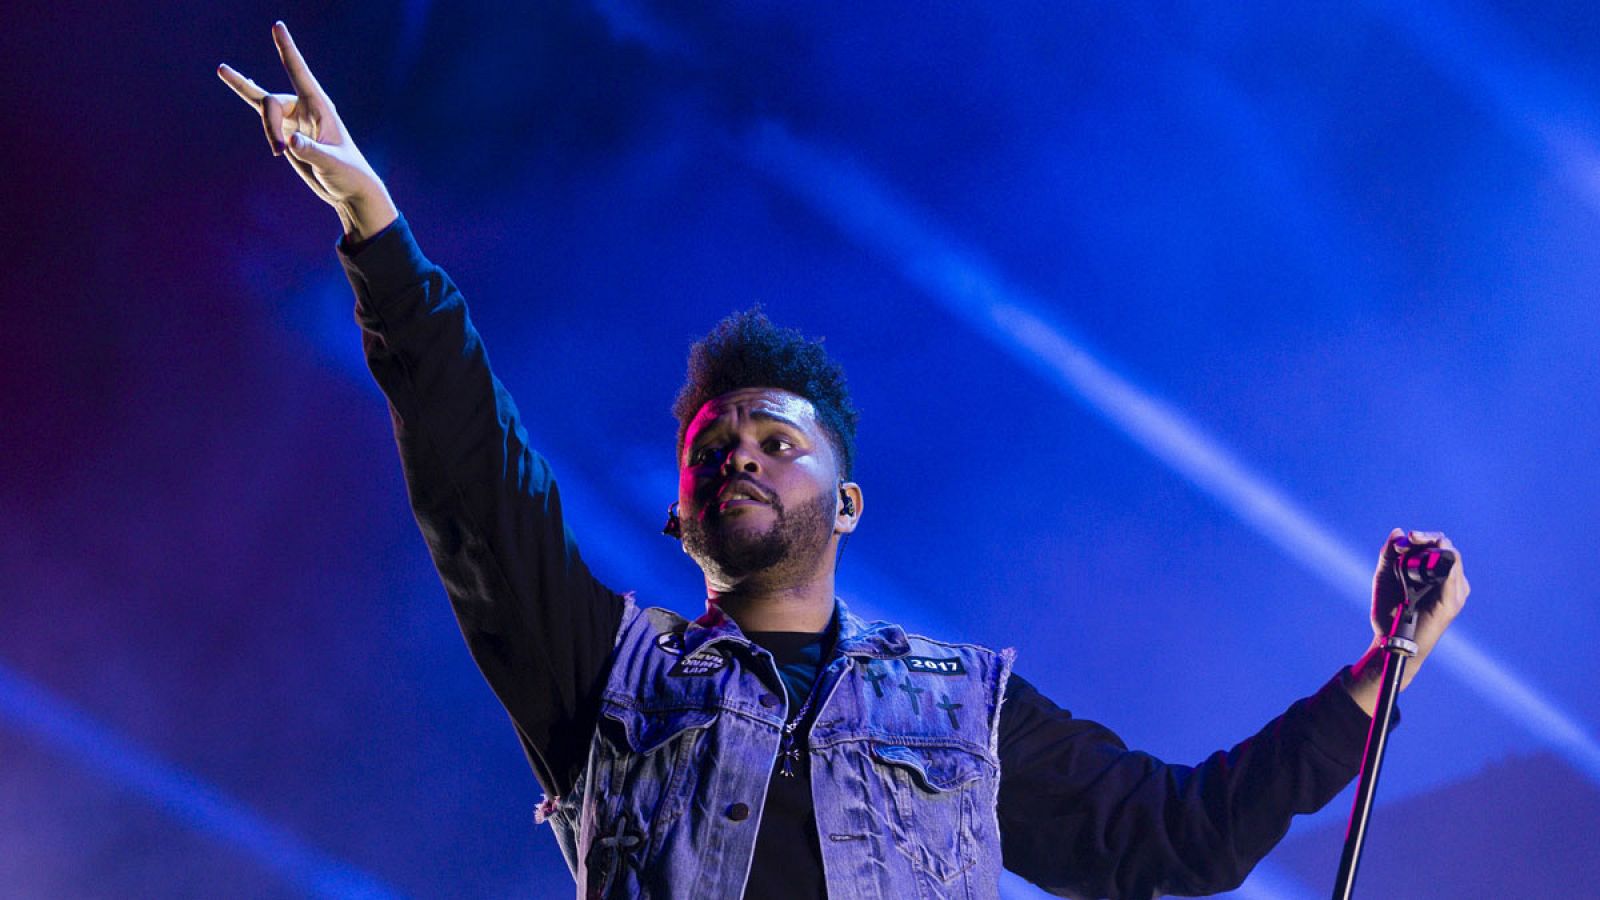 El cantante y compositor canadiense The Weeknd durante su actuación en la primera jornada del Festival Internacional de Benicassim, FIB 2017.